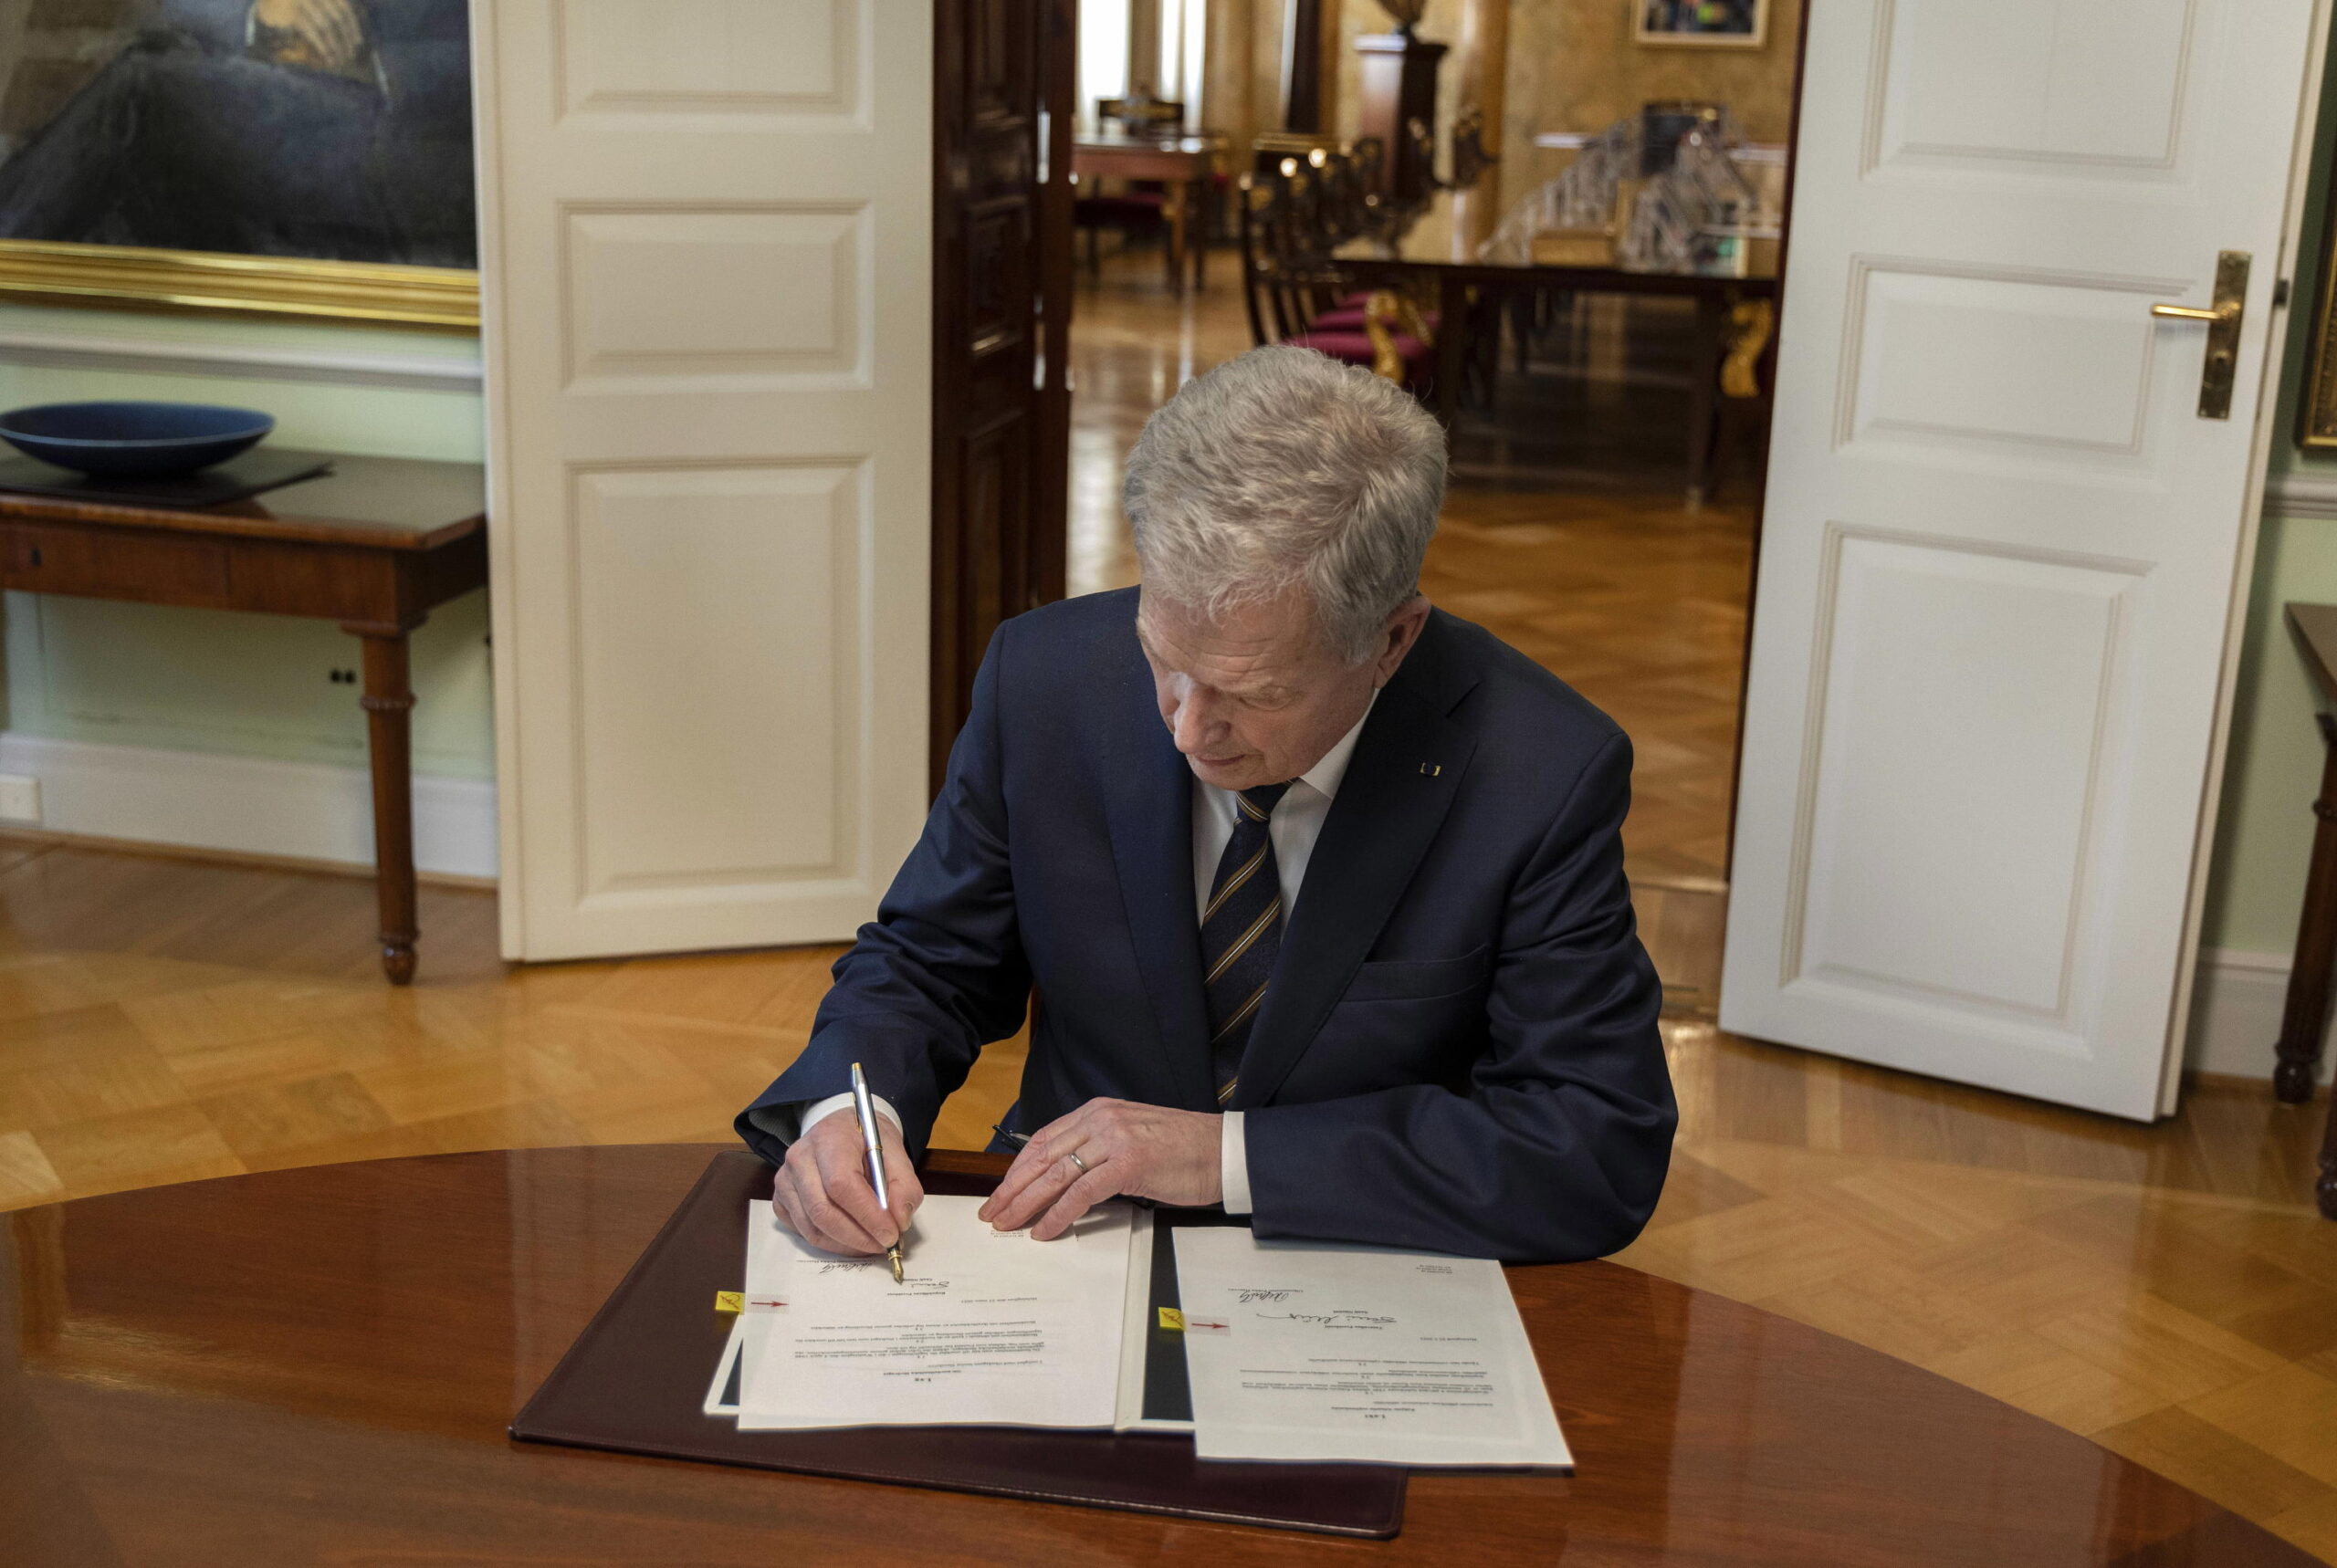 Adesione Finlandia alla Nato, Stoltenberg: “Ottima telefonata con il Presidente Sauli Niinisto”